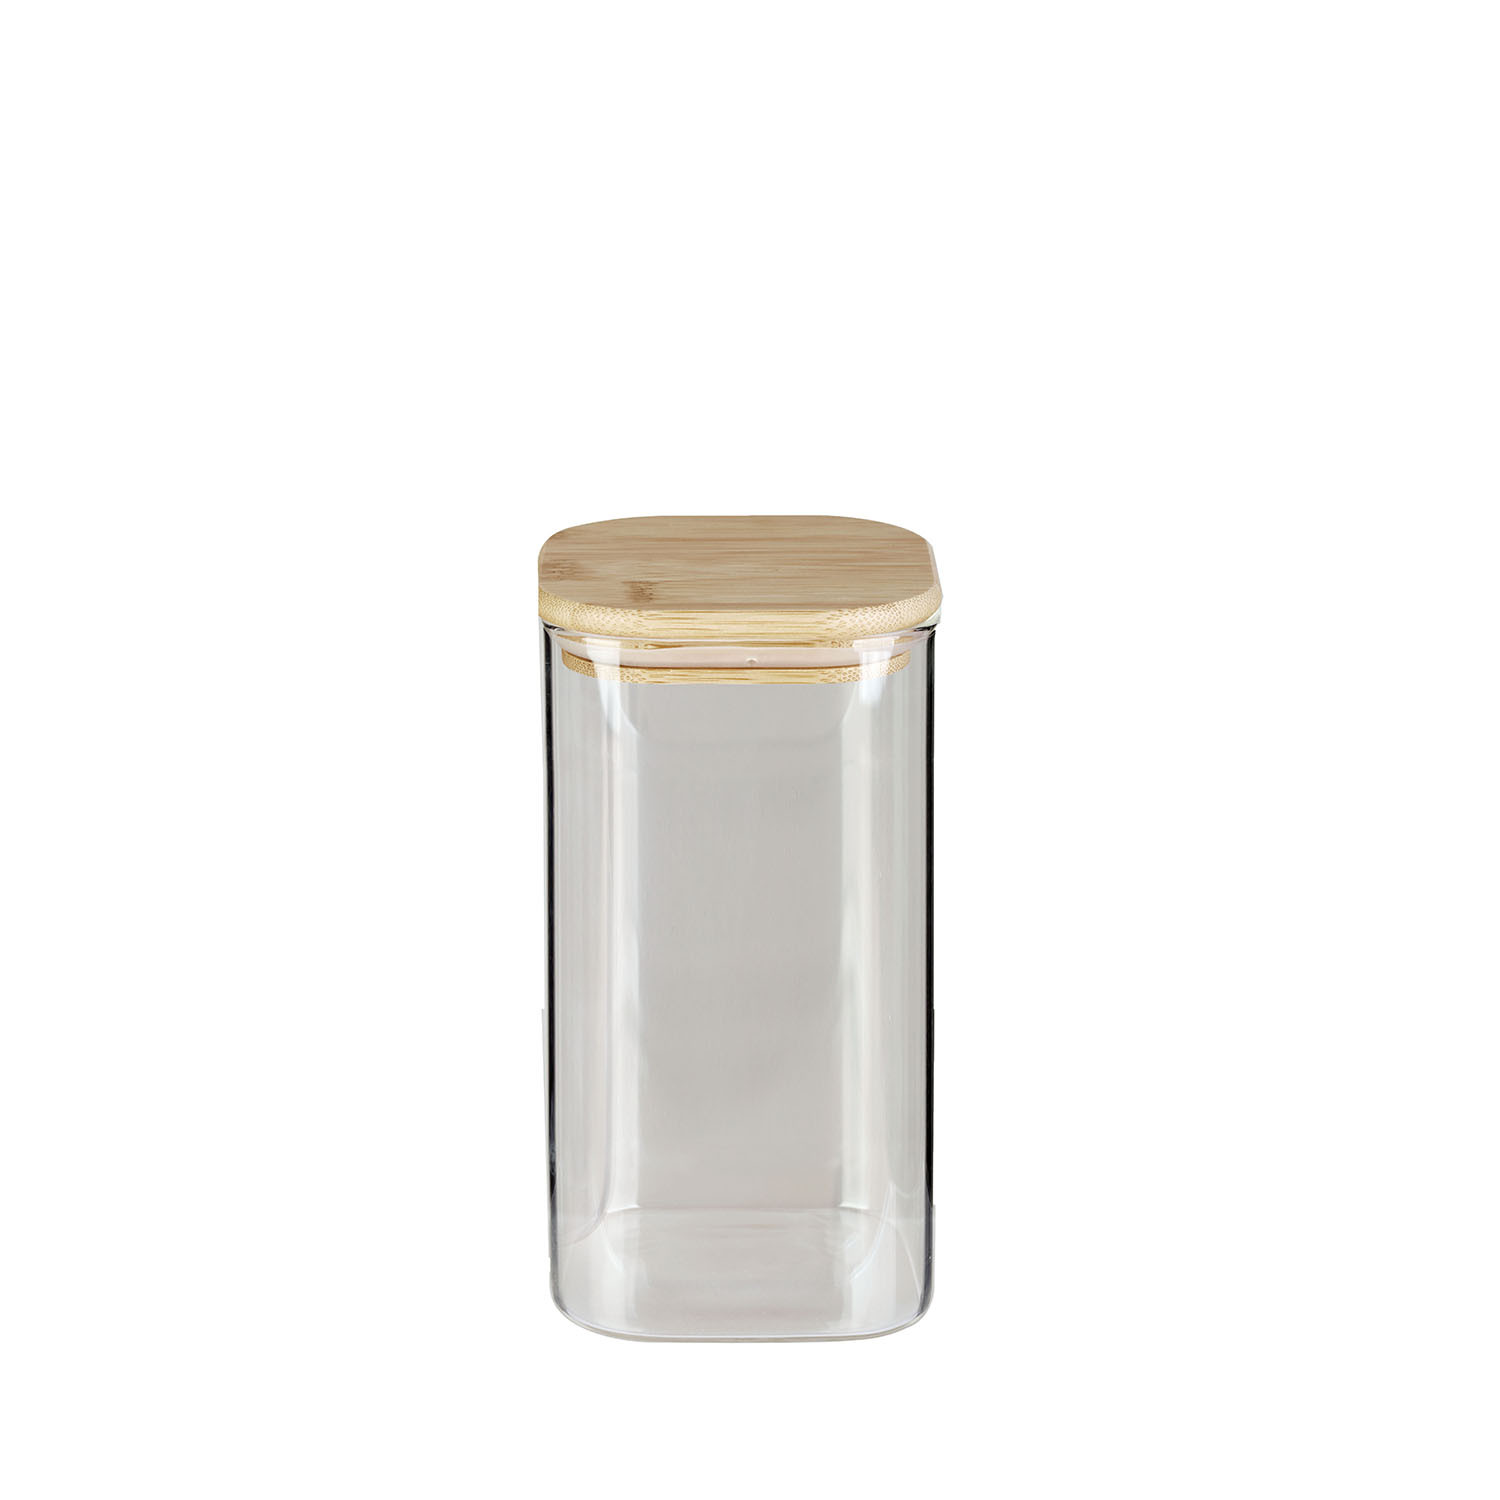 Bérard Vorratsglas mit Bambusholz-Deckel, 1,3 Liter quadratisch